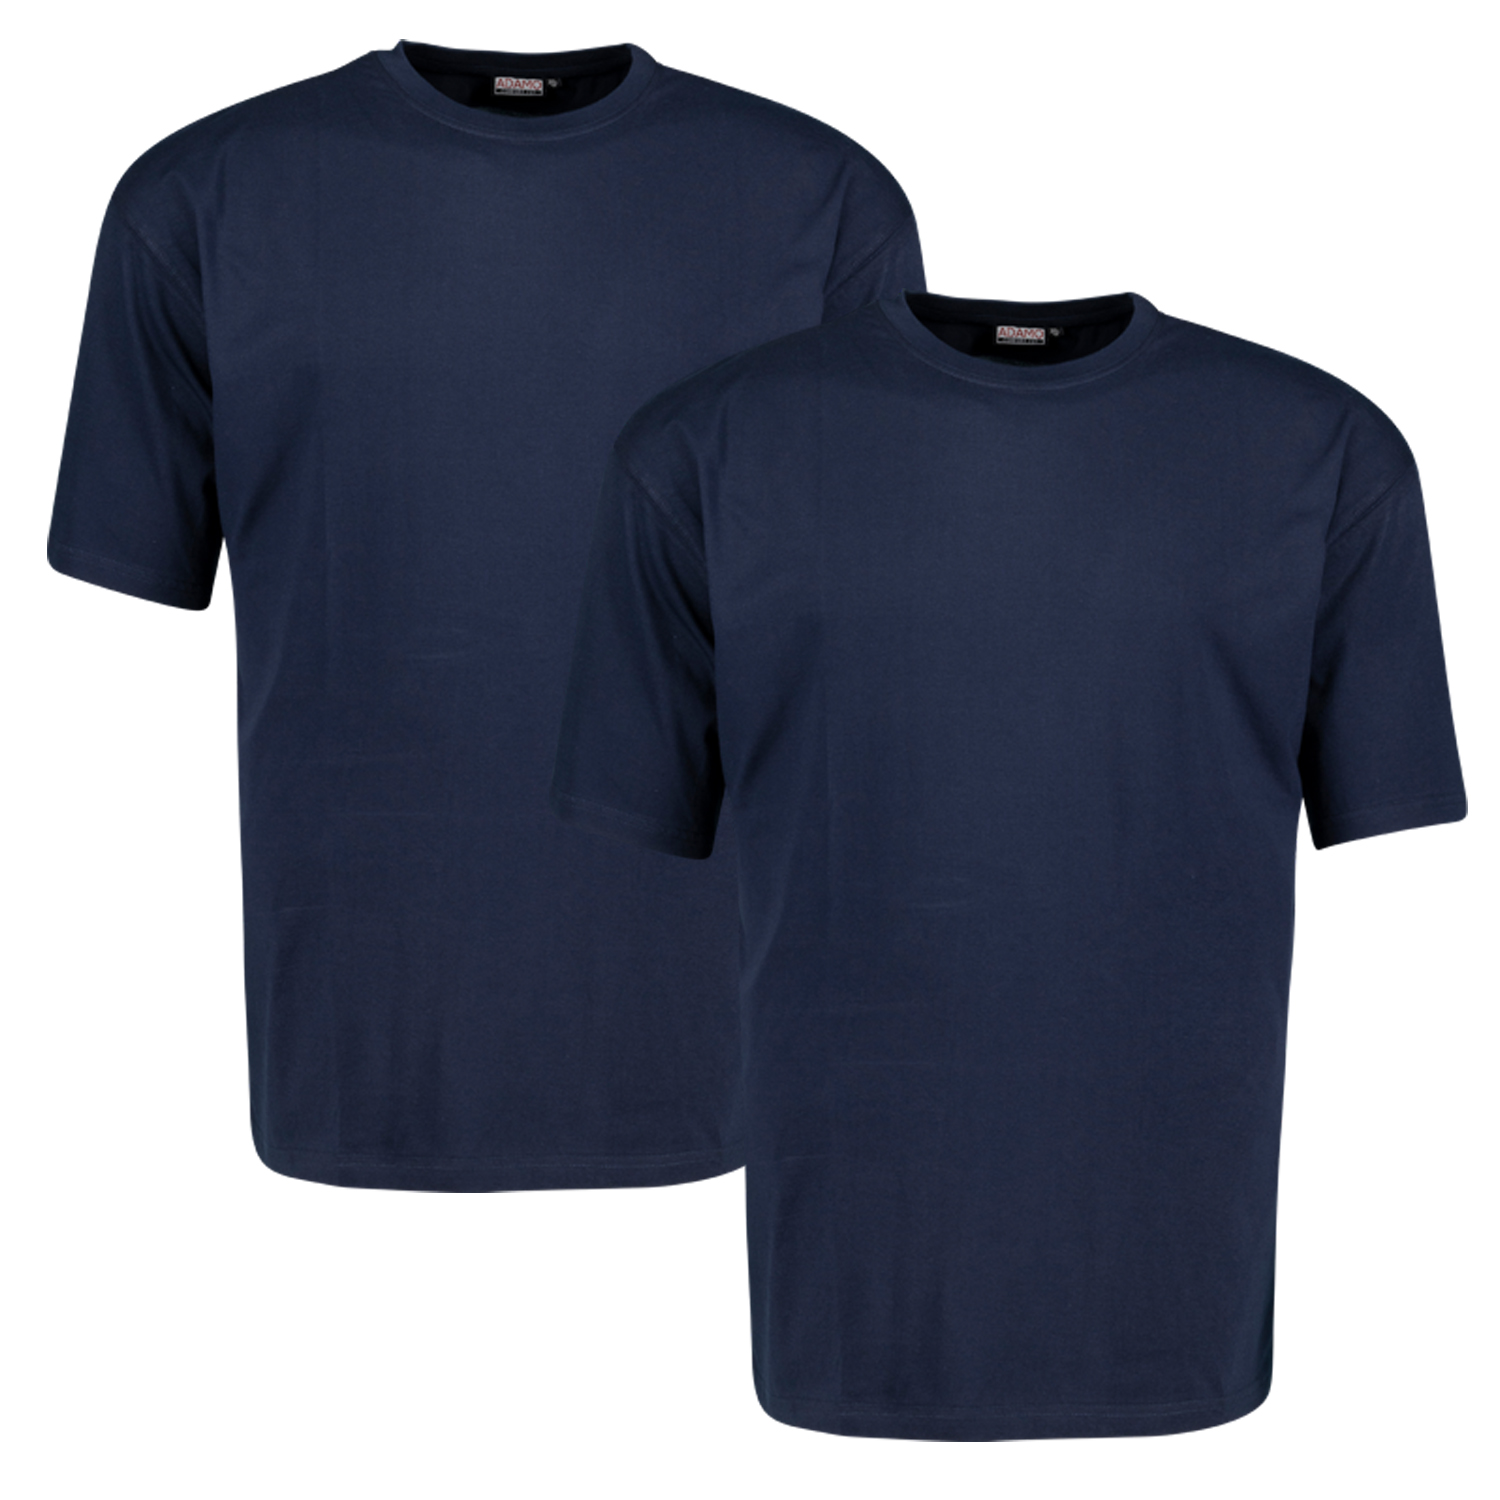 ADAMO Rundhals T-Shirt COMFORT FIT MARLON 2er-Pack in verschiedenen Farben und Größen bis 18XL